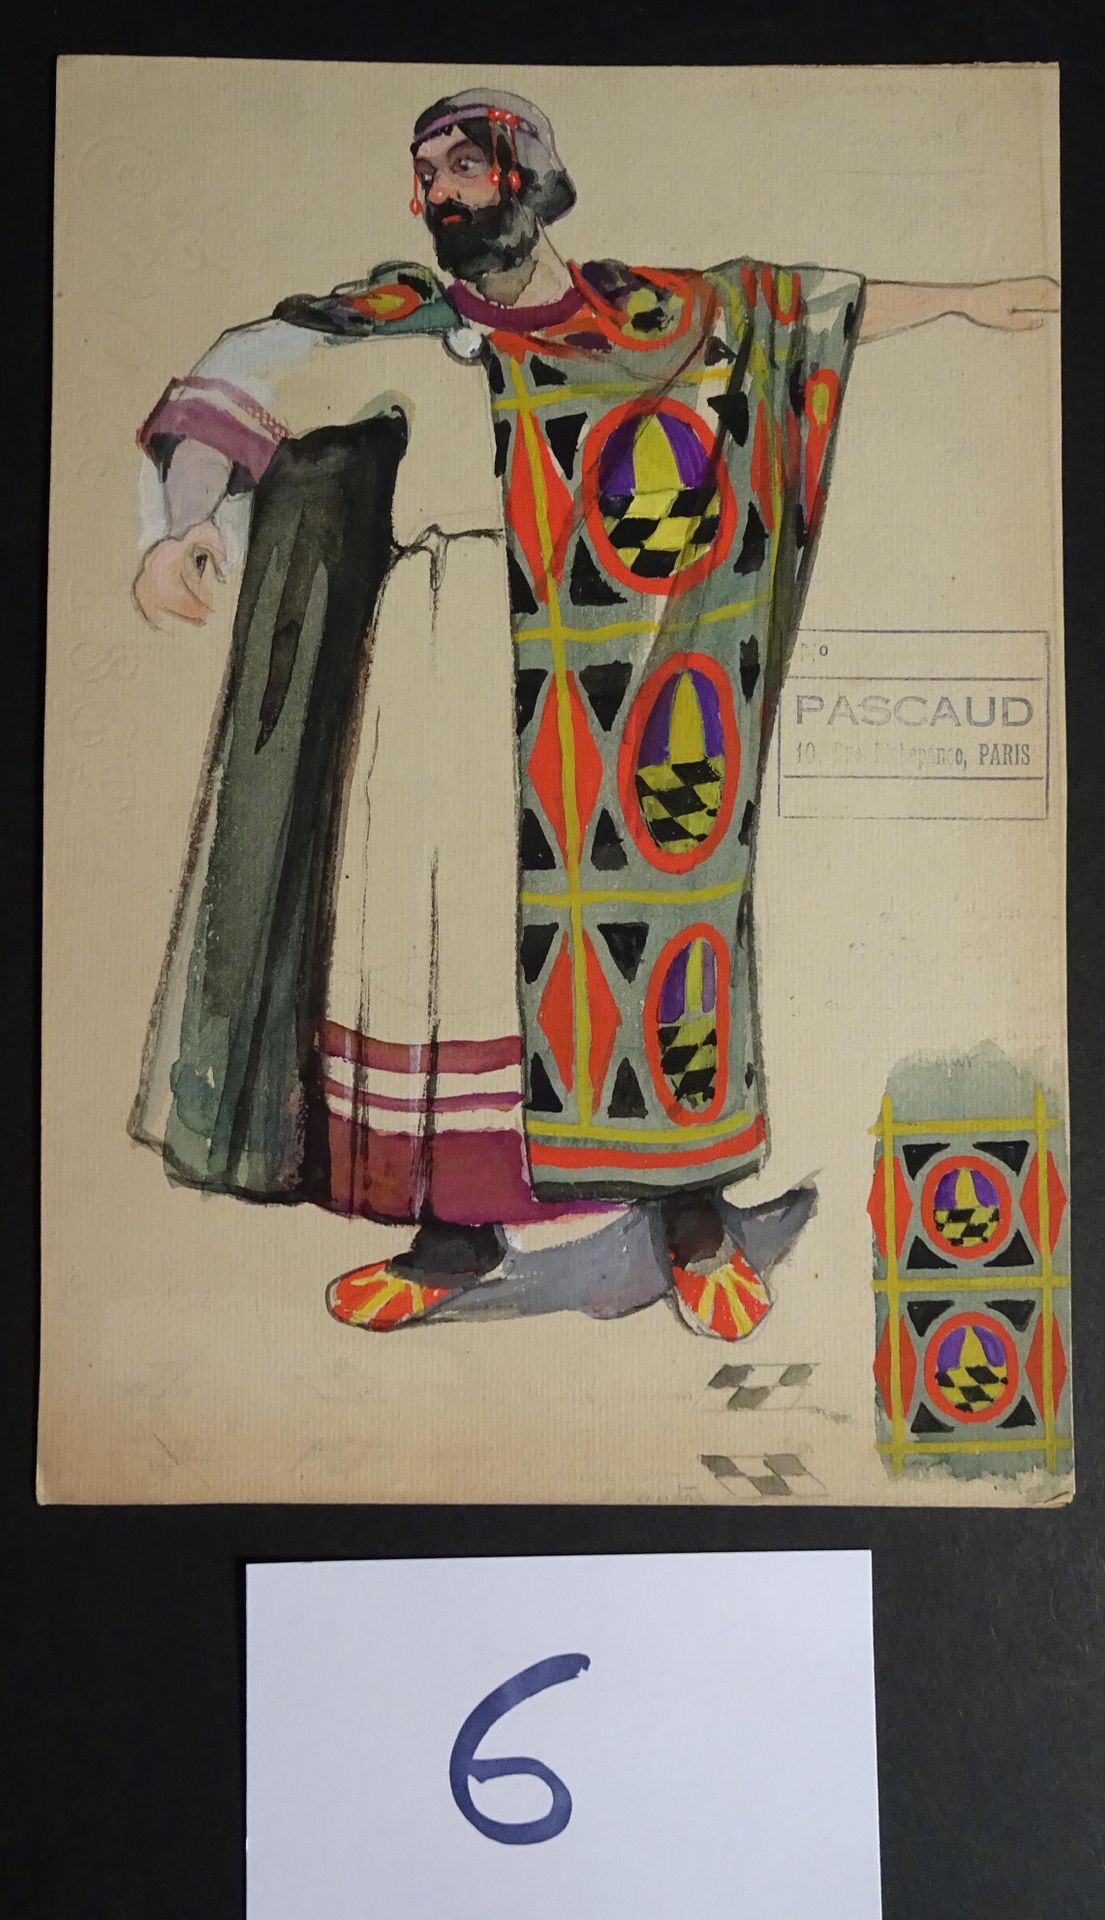 ZINOVIEW ALEXANDRE ZINOVIEW ( 1889-1977 )

"Attore russo drappeggiato" c 1900. A&hellip;